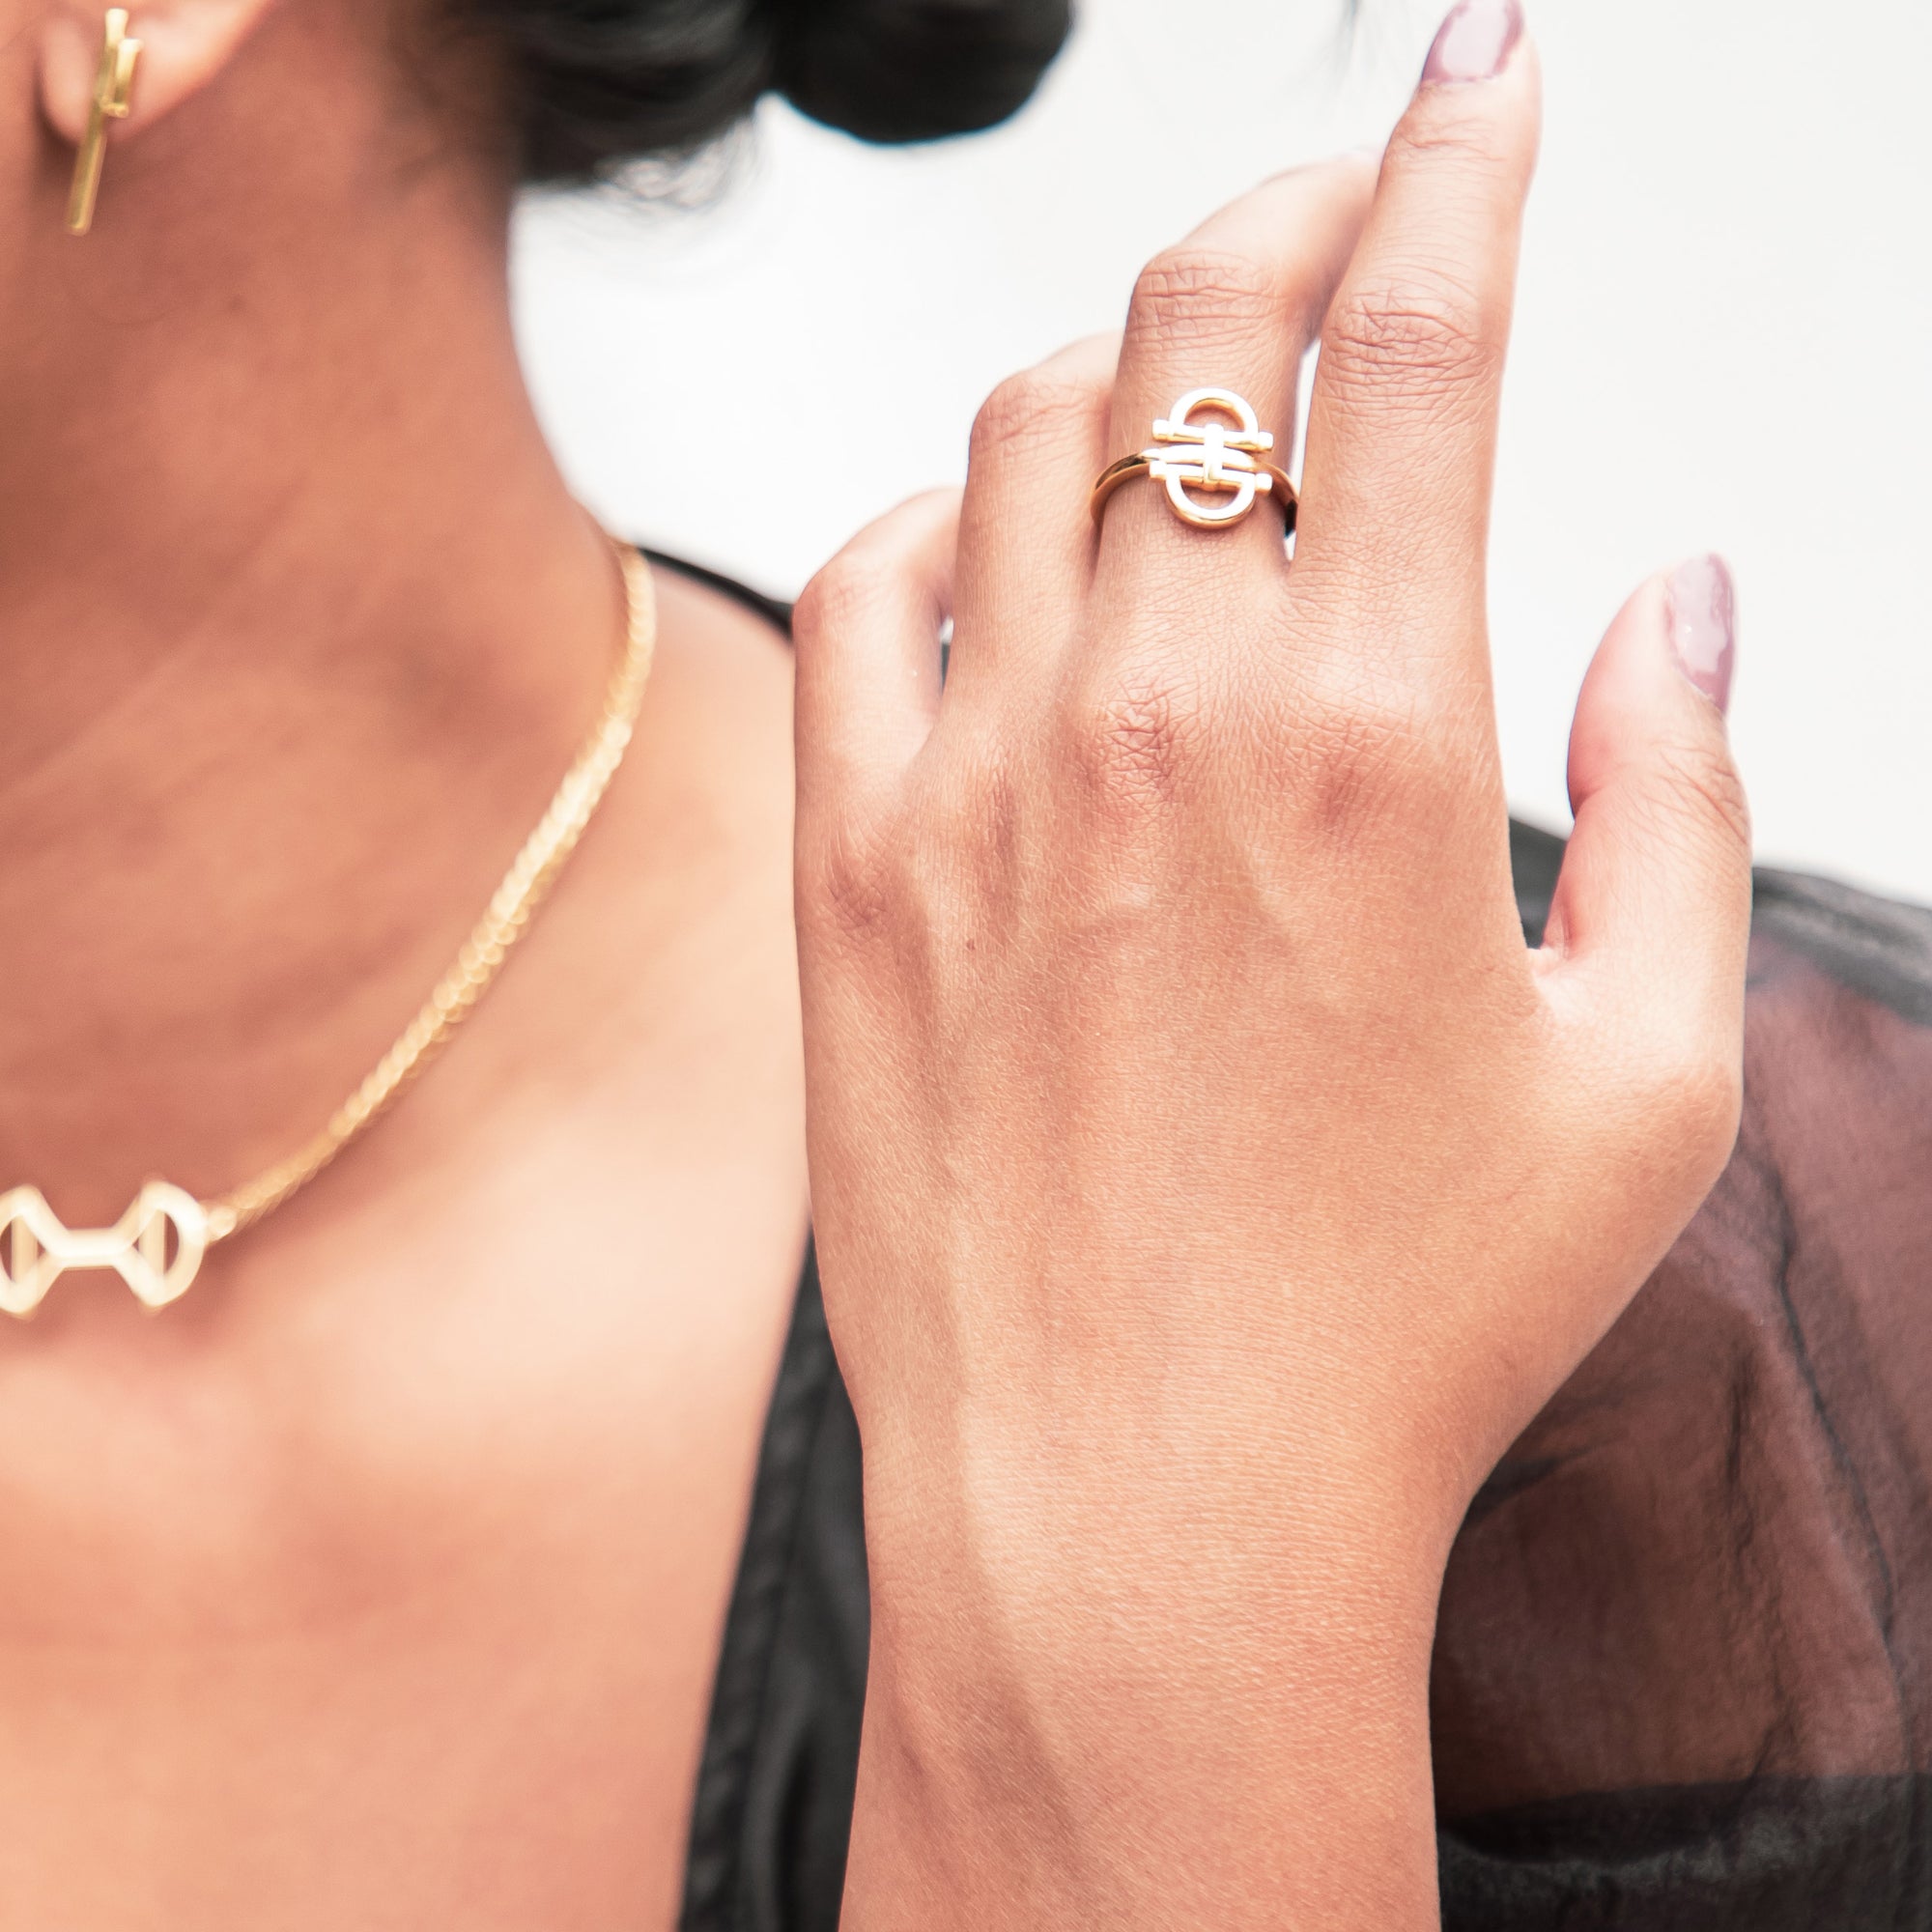 gold vermeil rings for women 